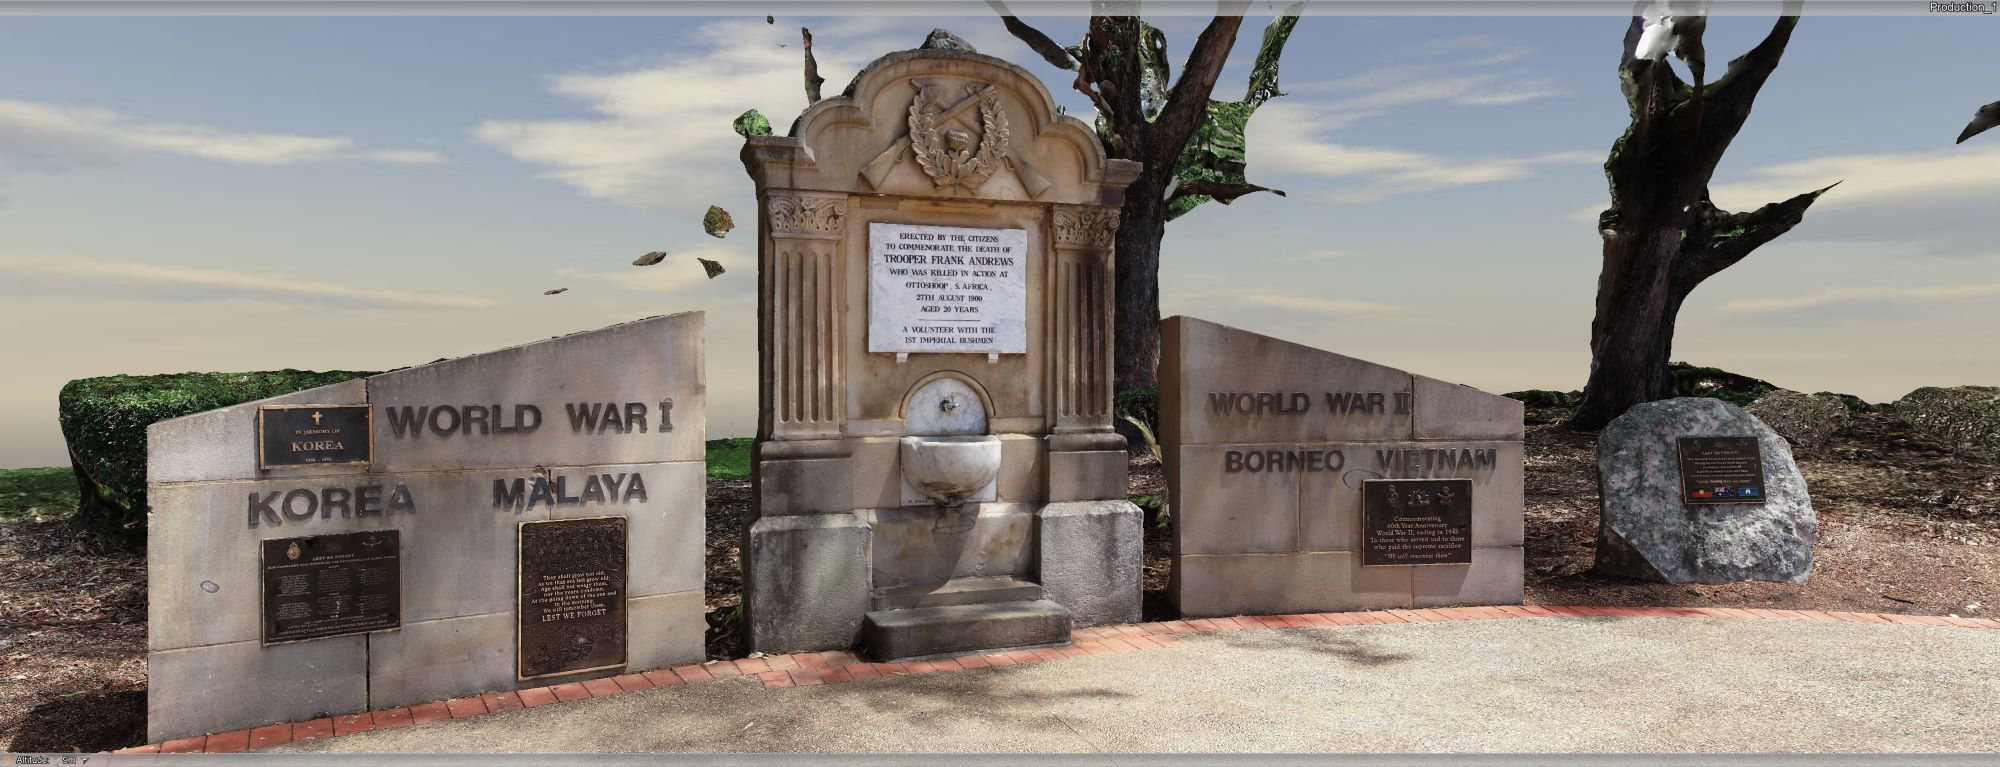 Wollongong Cenotaph_photogrammetry wide sml.jpg